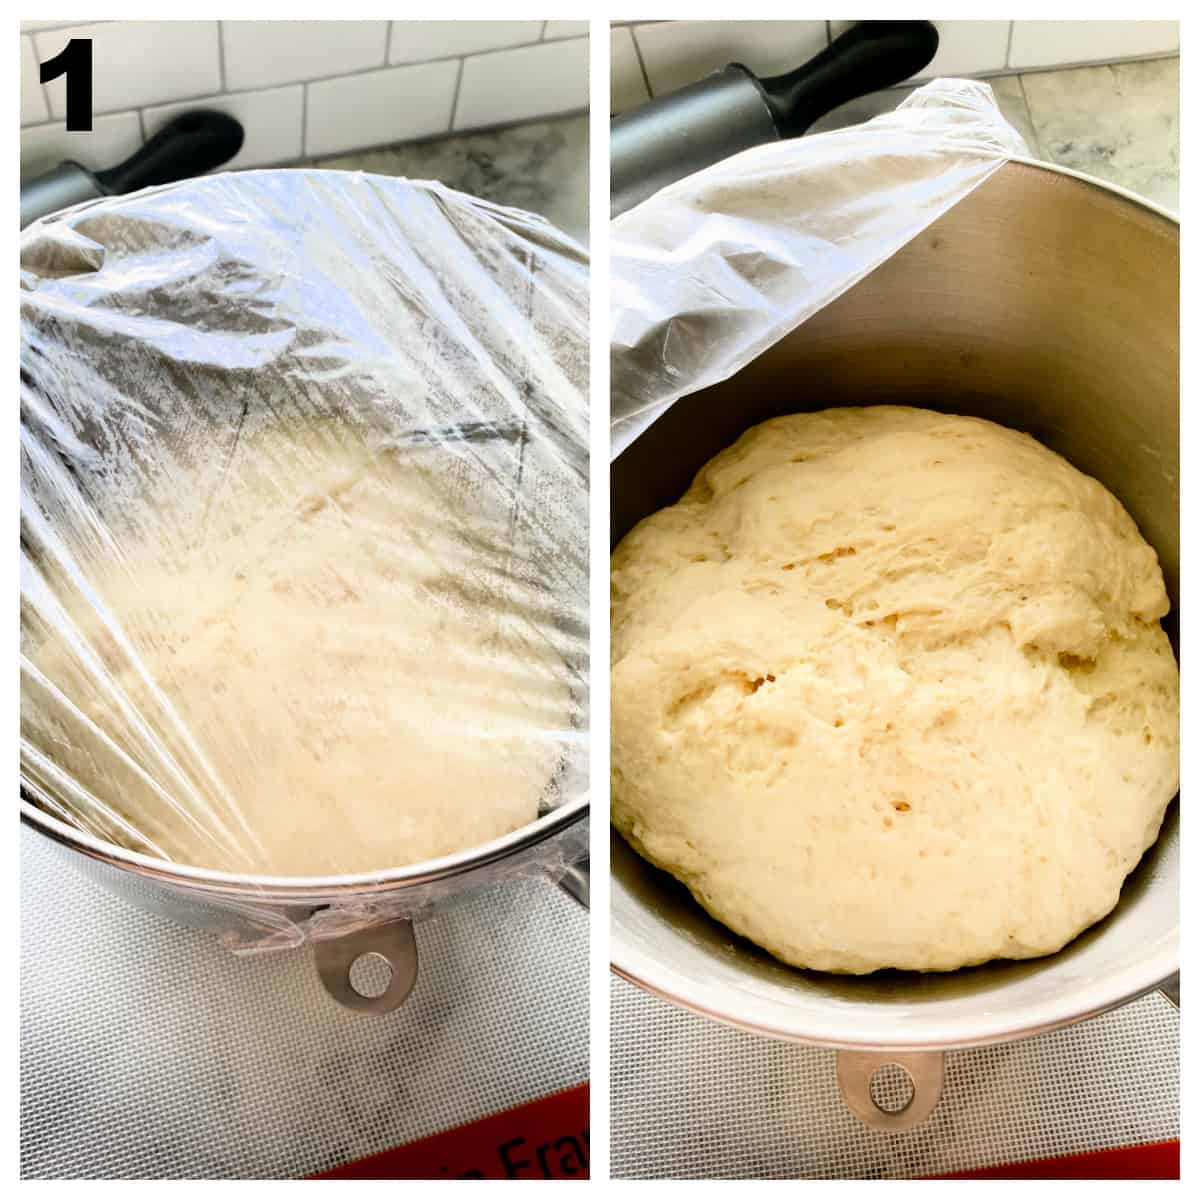 2 steps of dough rising in metal bowl.